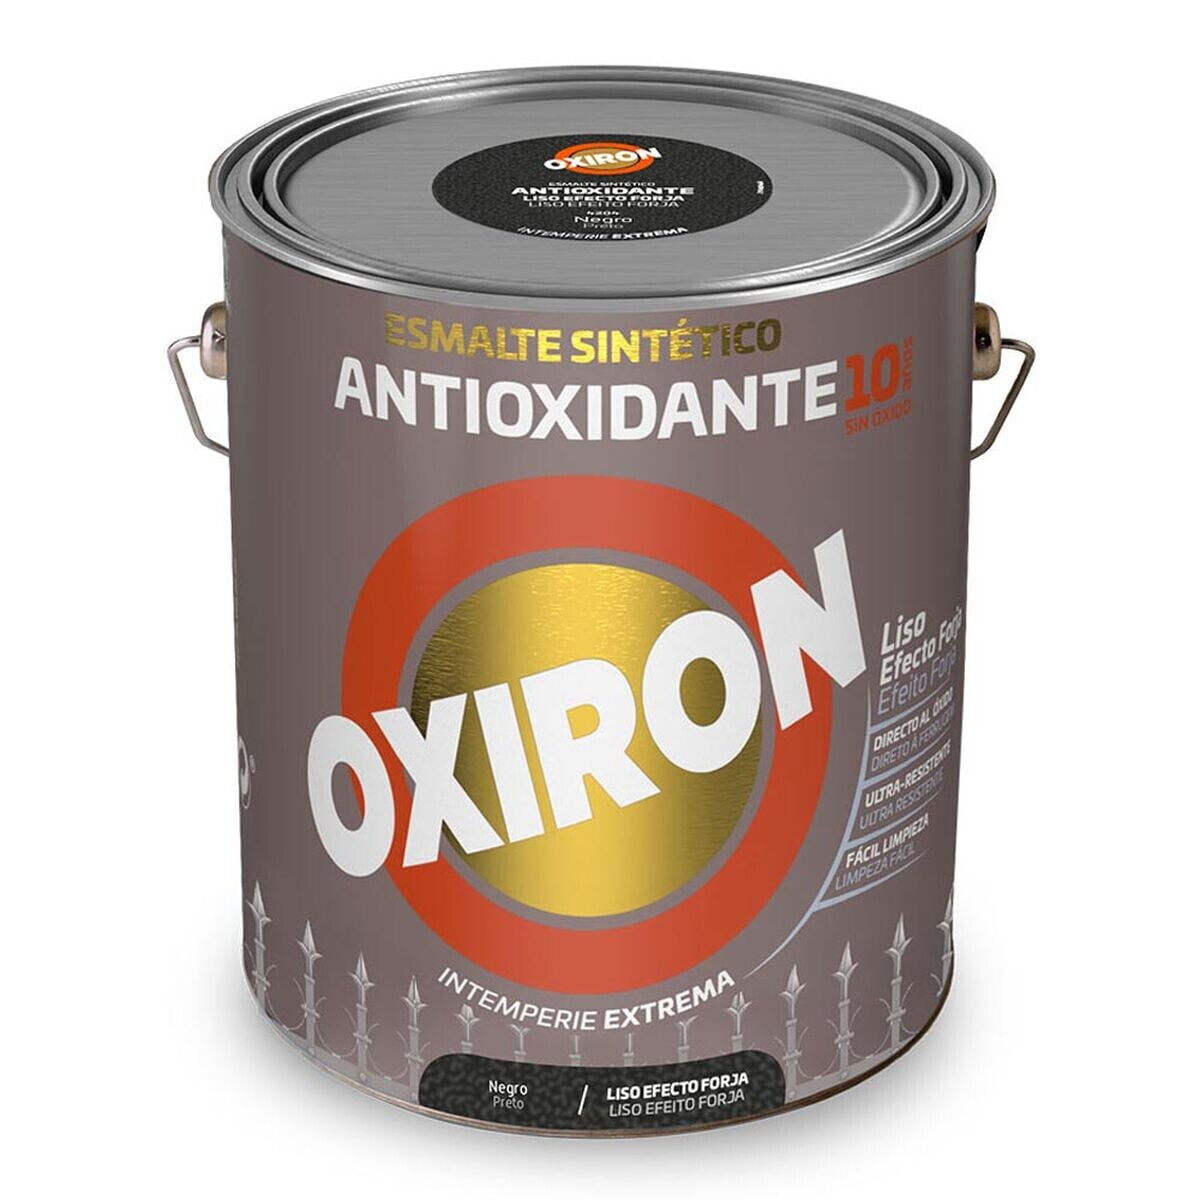 Синтетическая эмаль Oxiron Titan 5809095 Чёрный антиоксидантами